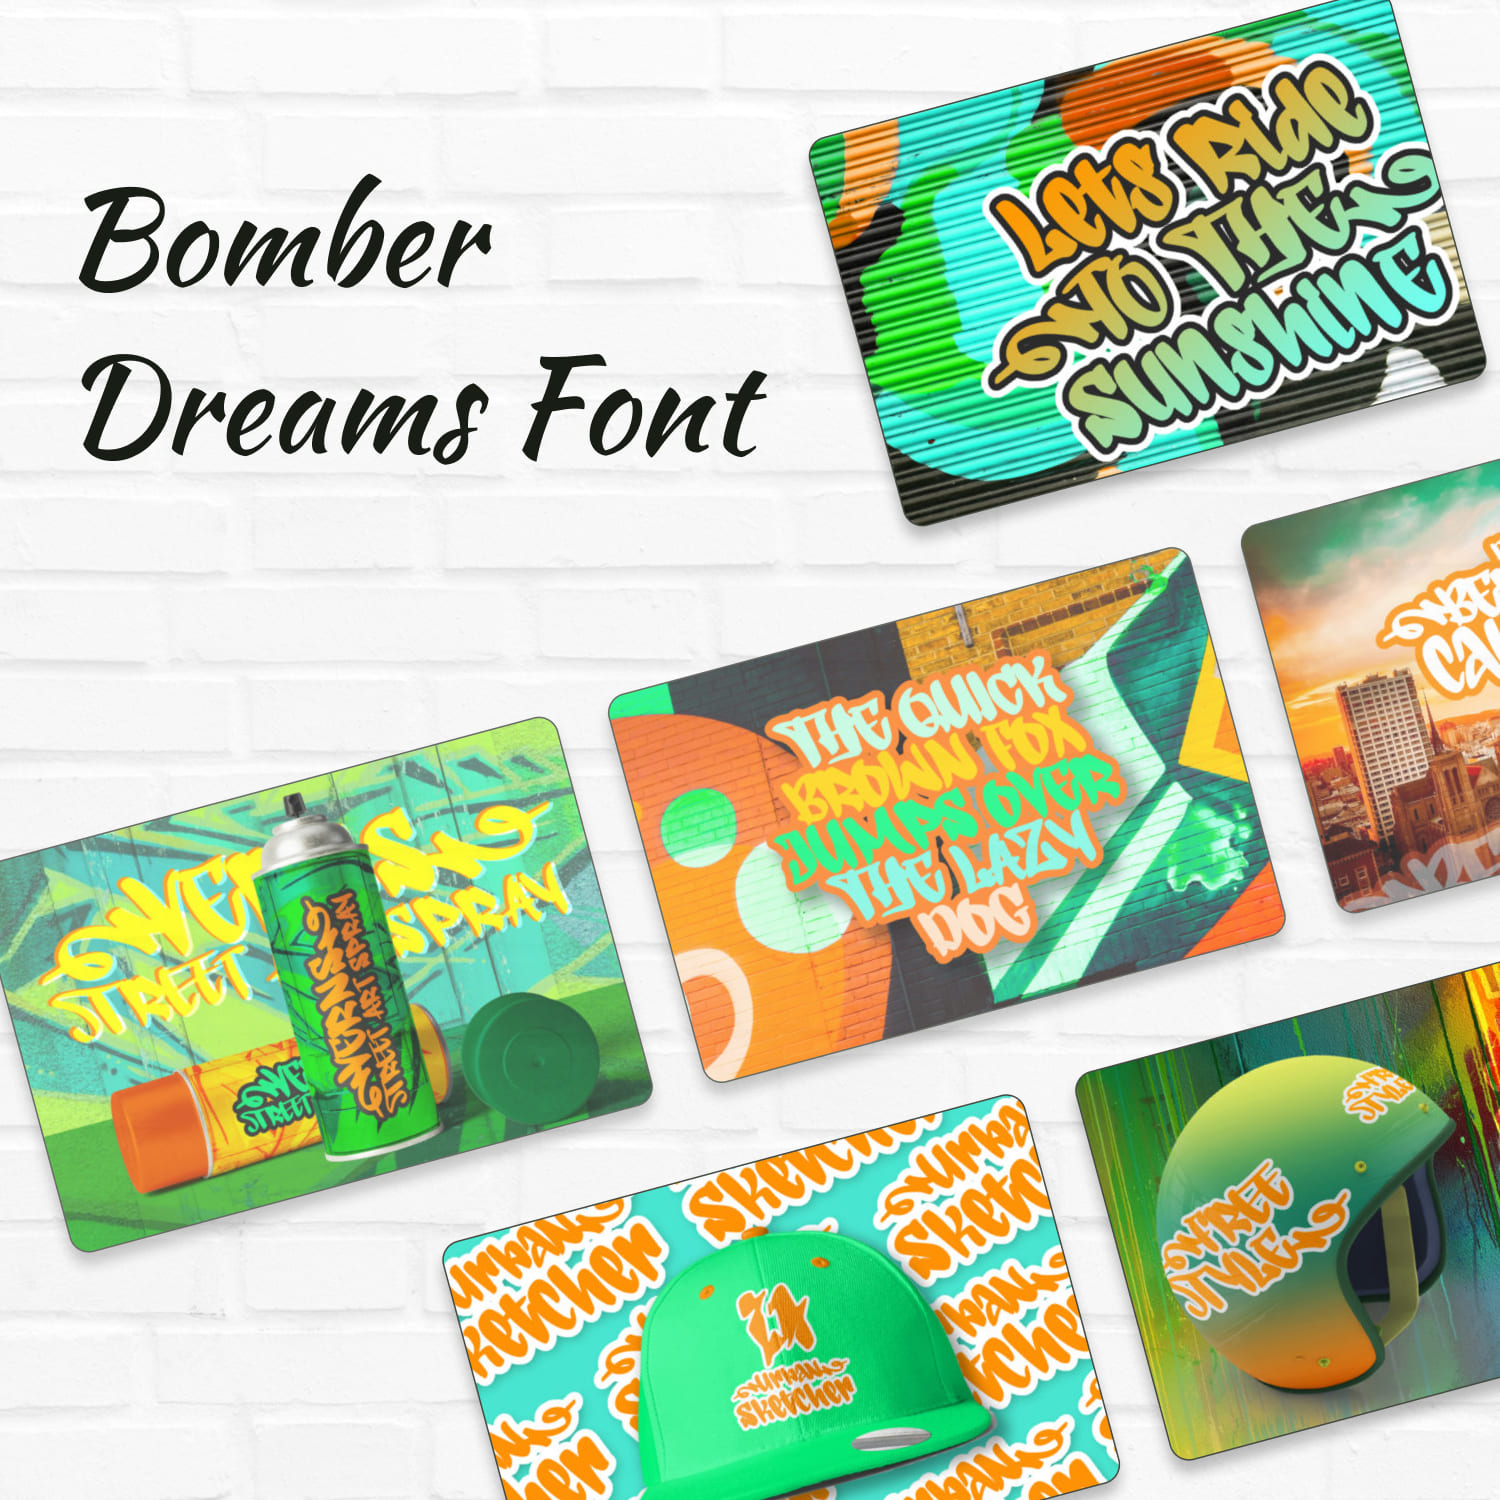 Bomber Dreams Font.